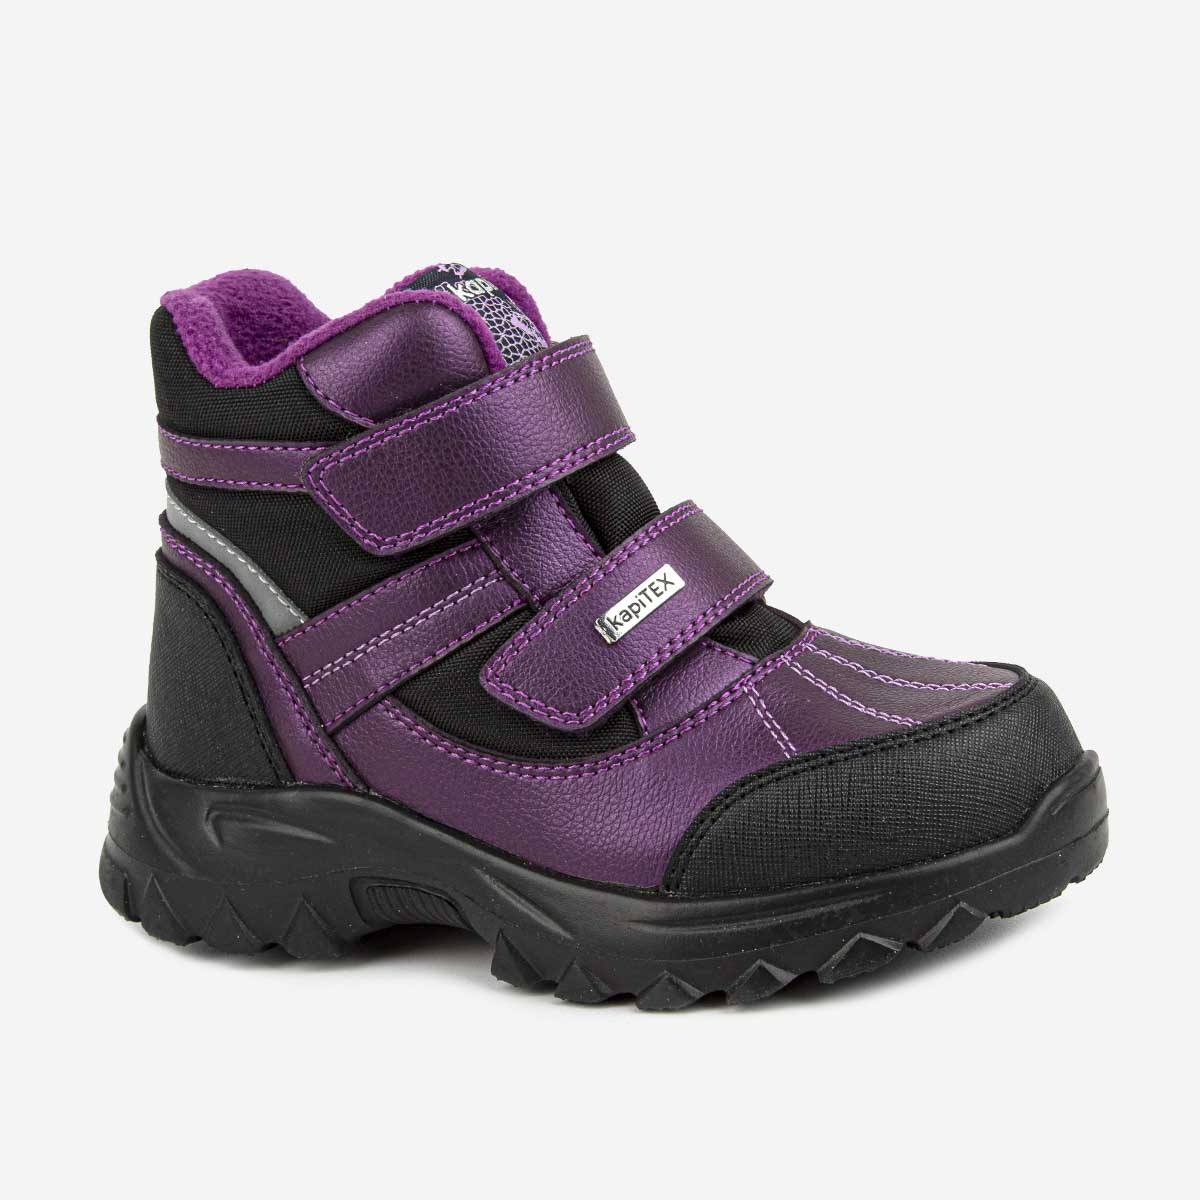 Ботинки детские Kapika 41490л, фиолетовый, 24